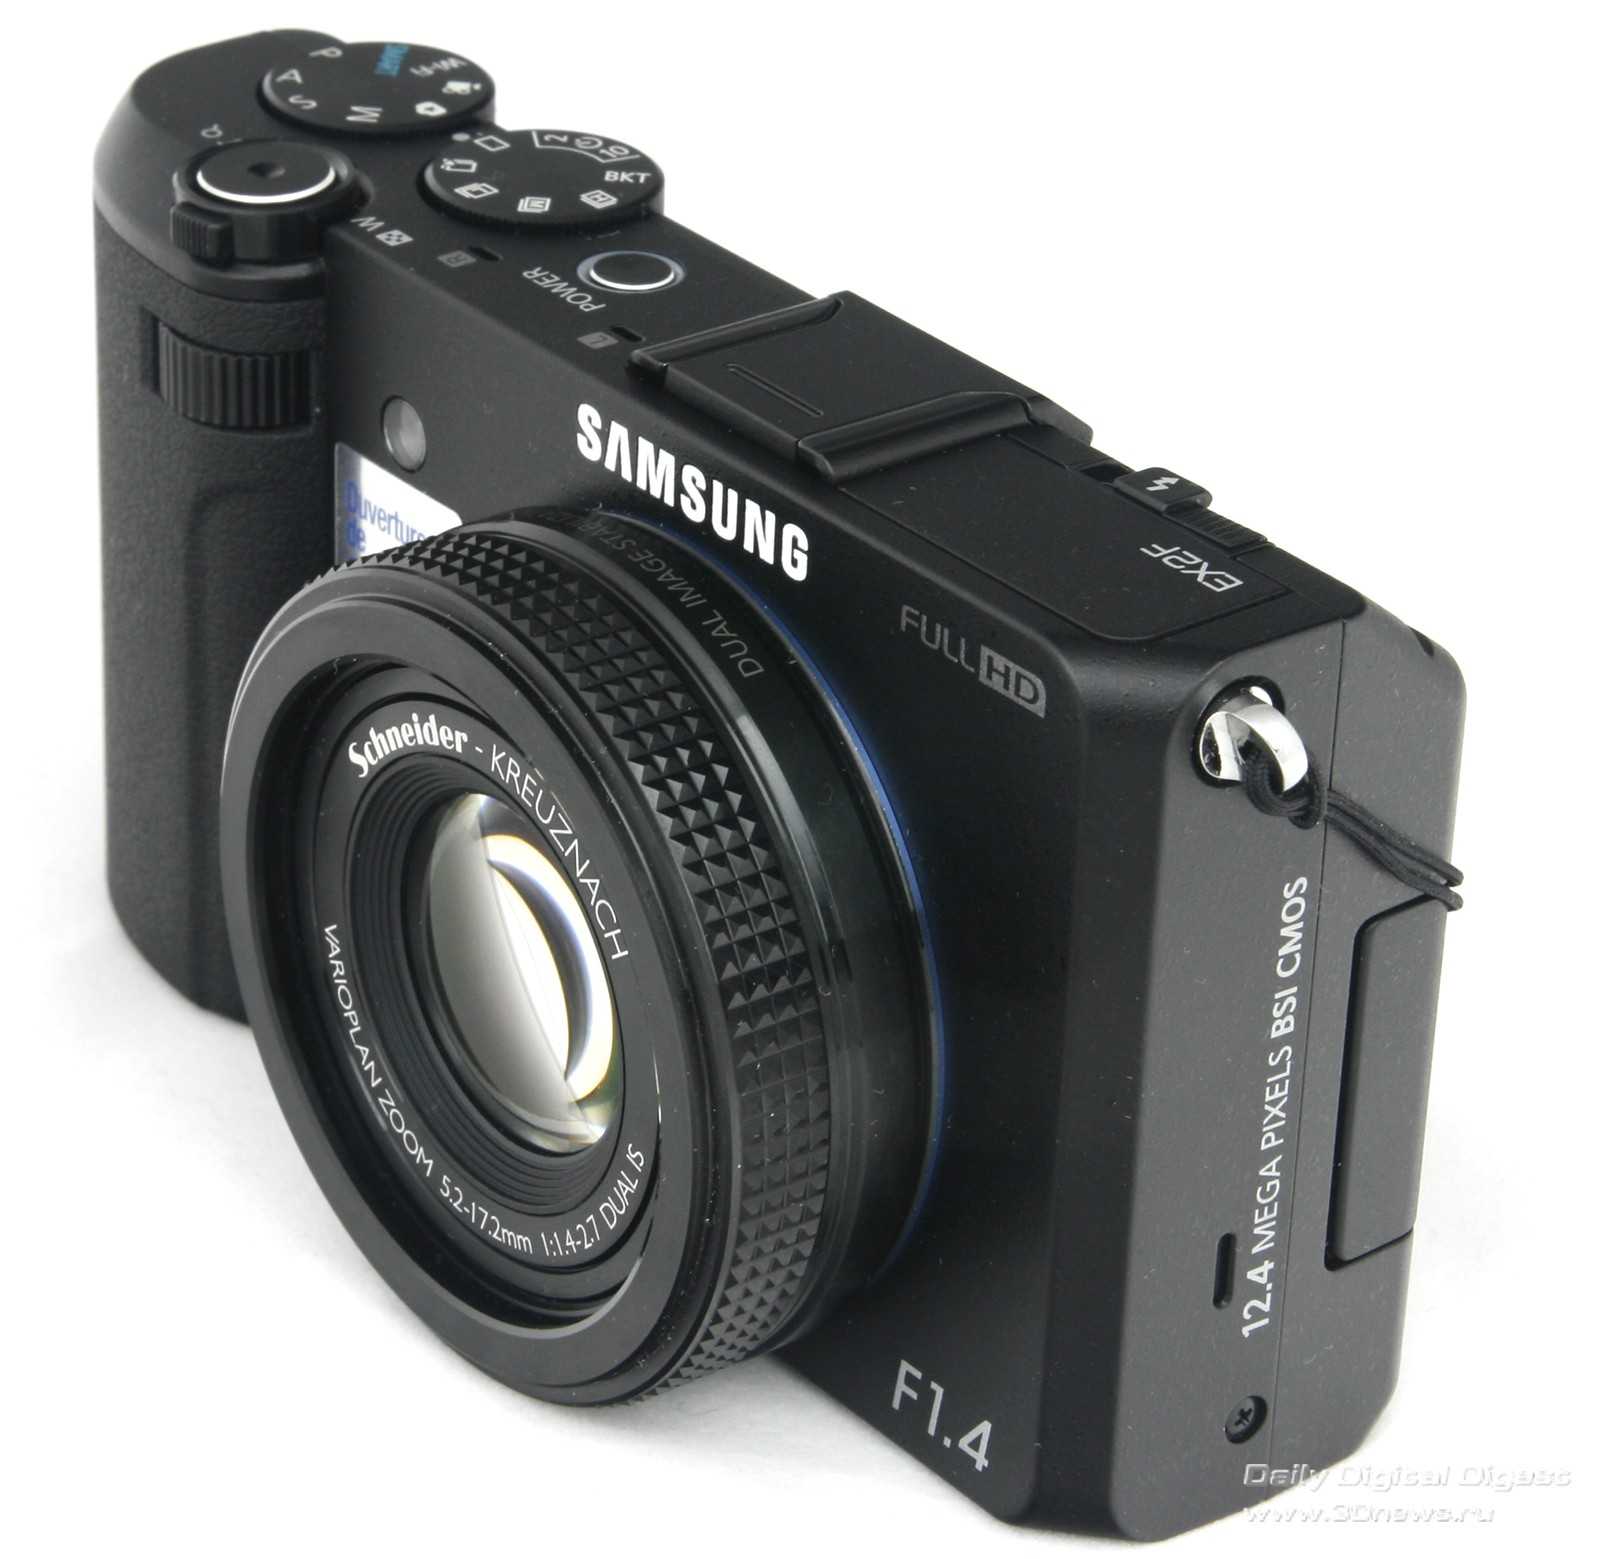 Samsung ex2f (черный) - купить , скидки, цена, отзывы, обзор, характеристики - фотоаппараты цифровые